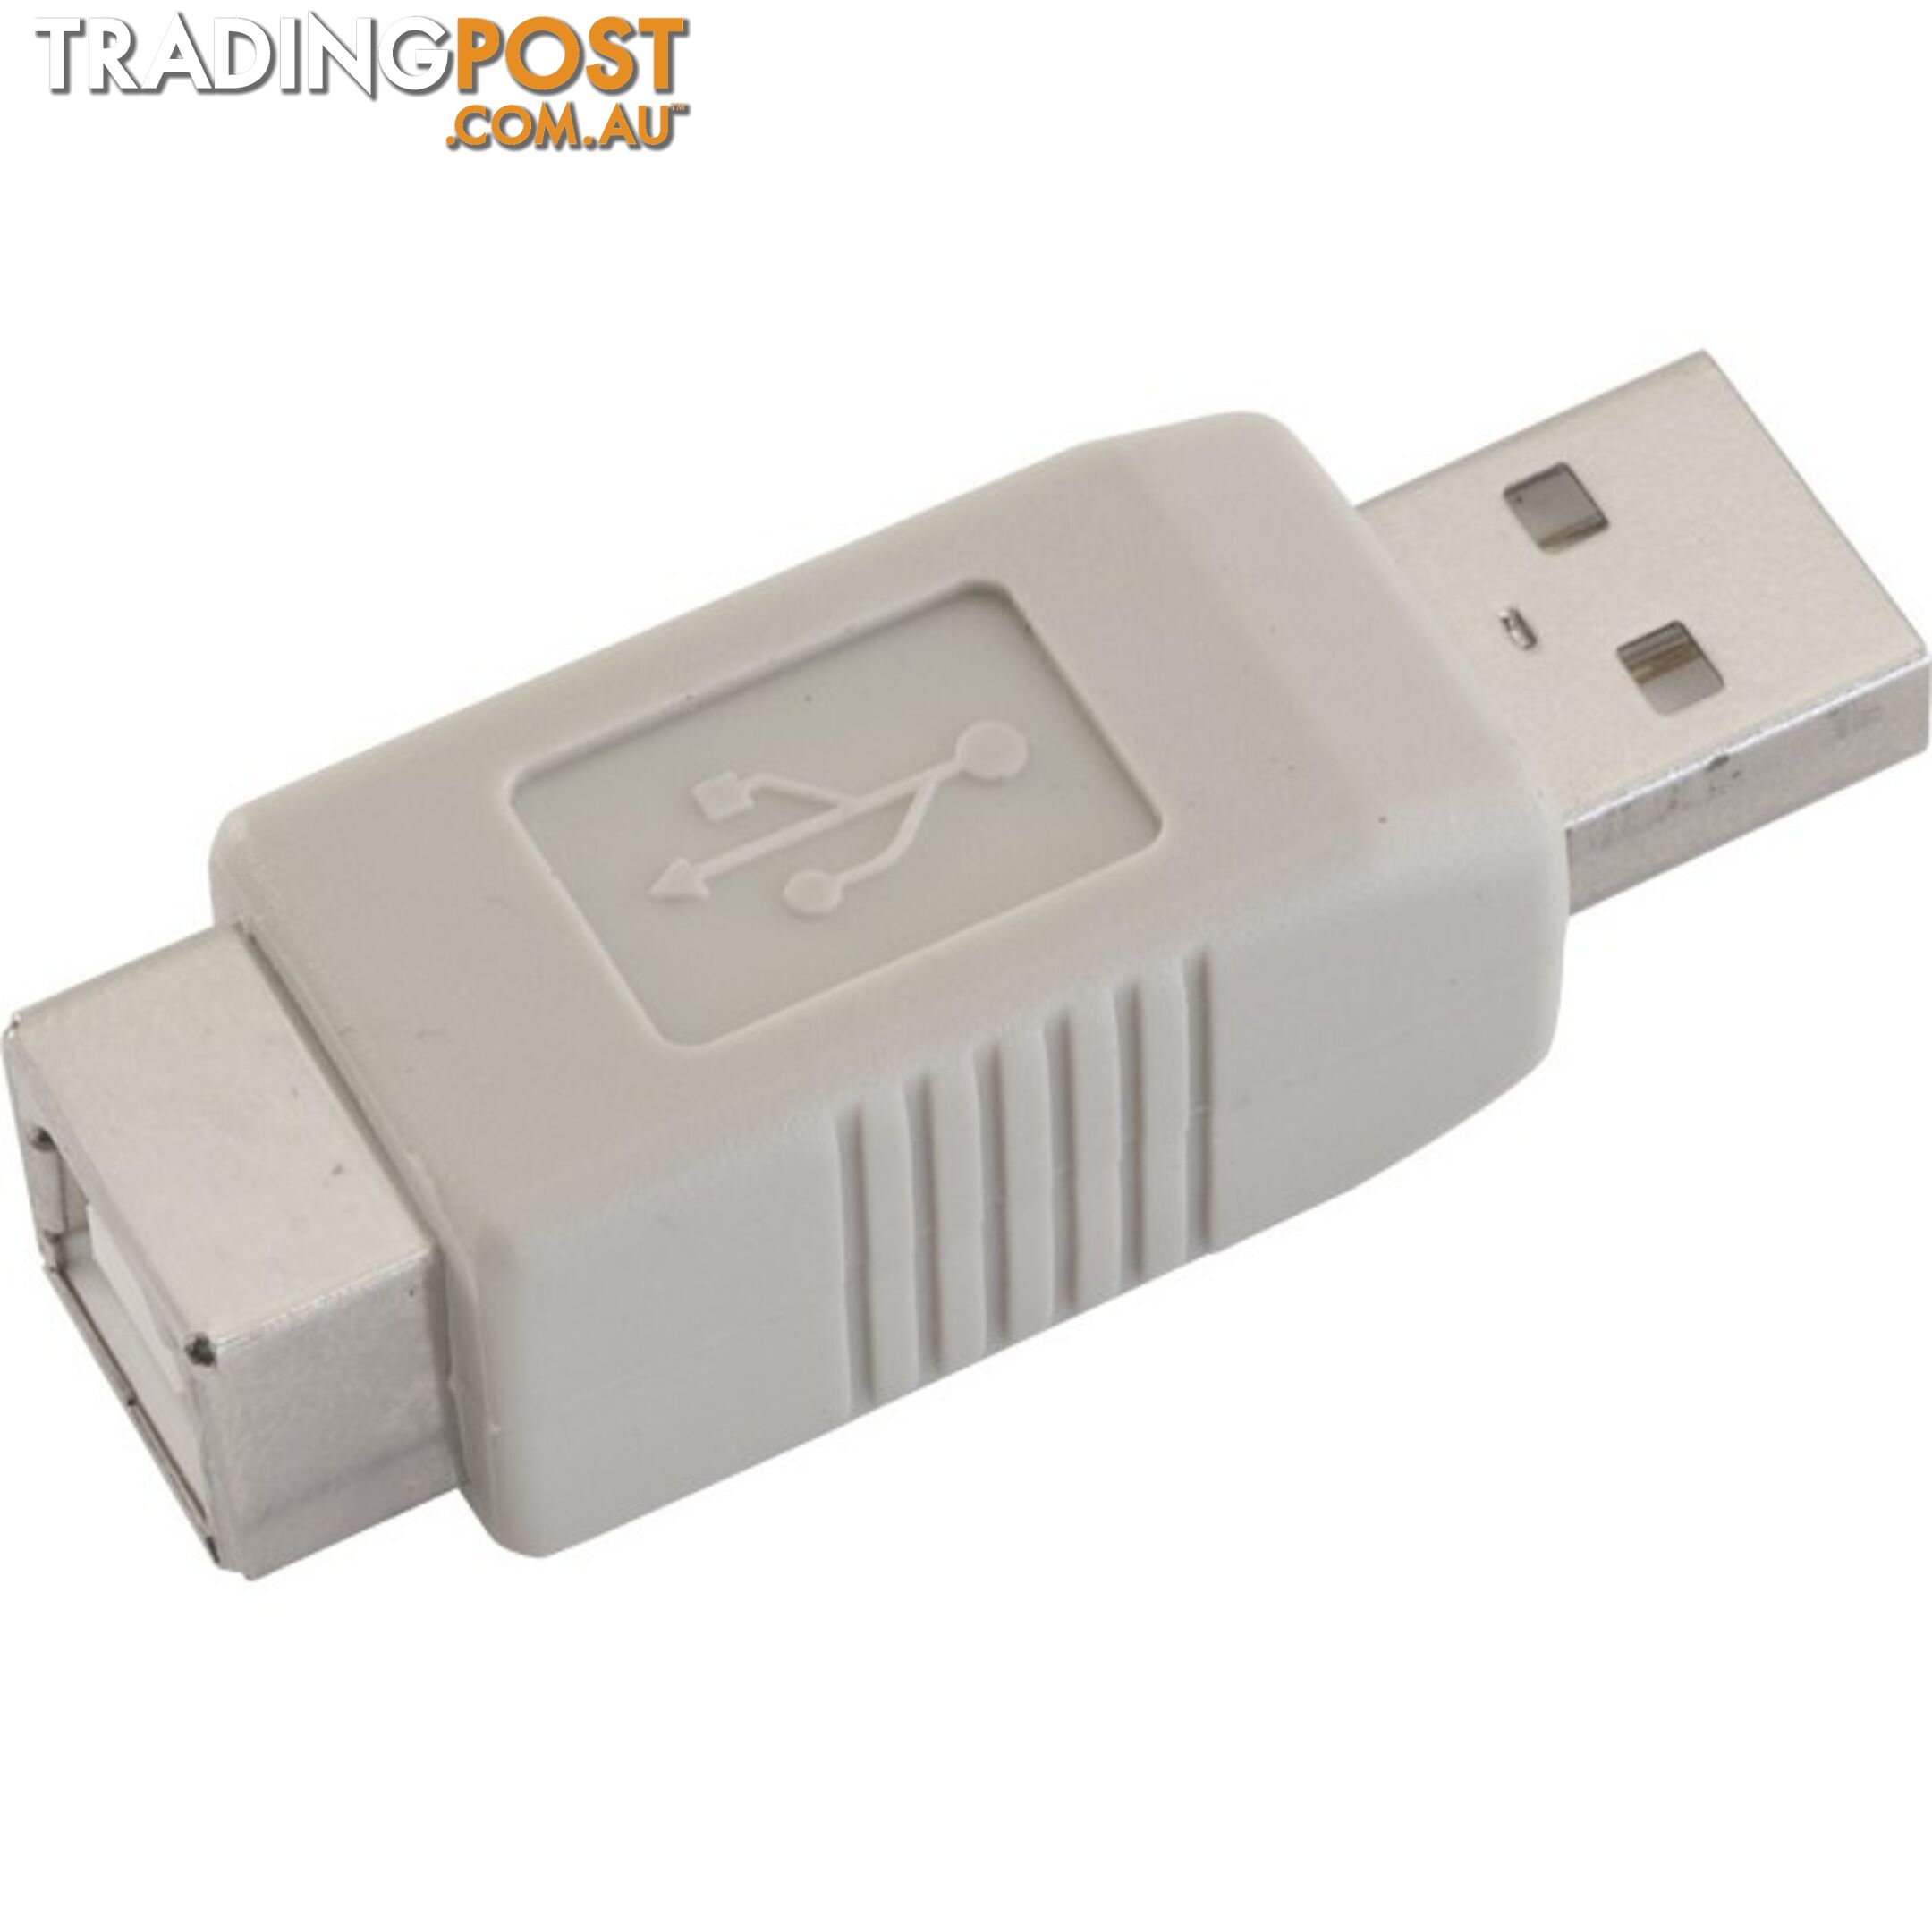 PA2319 USB-A PLUG TO USB-B SOCKET ADAPTOR